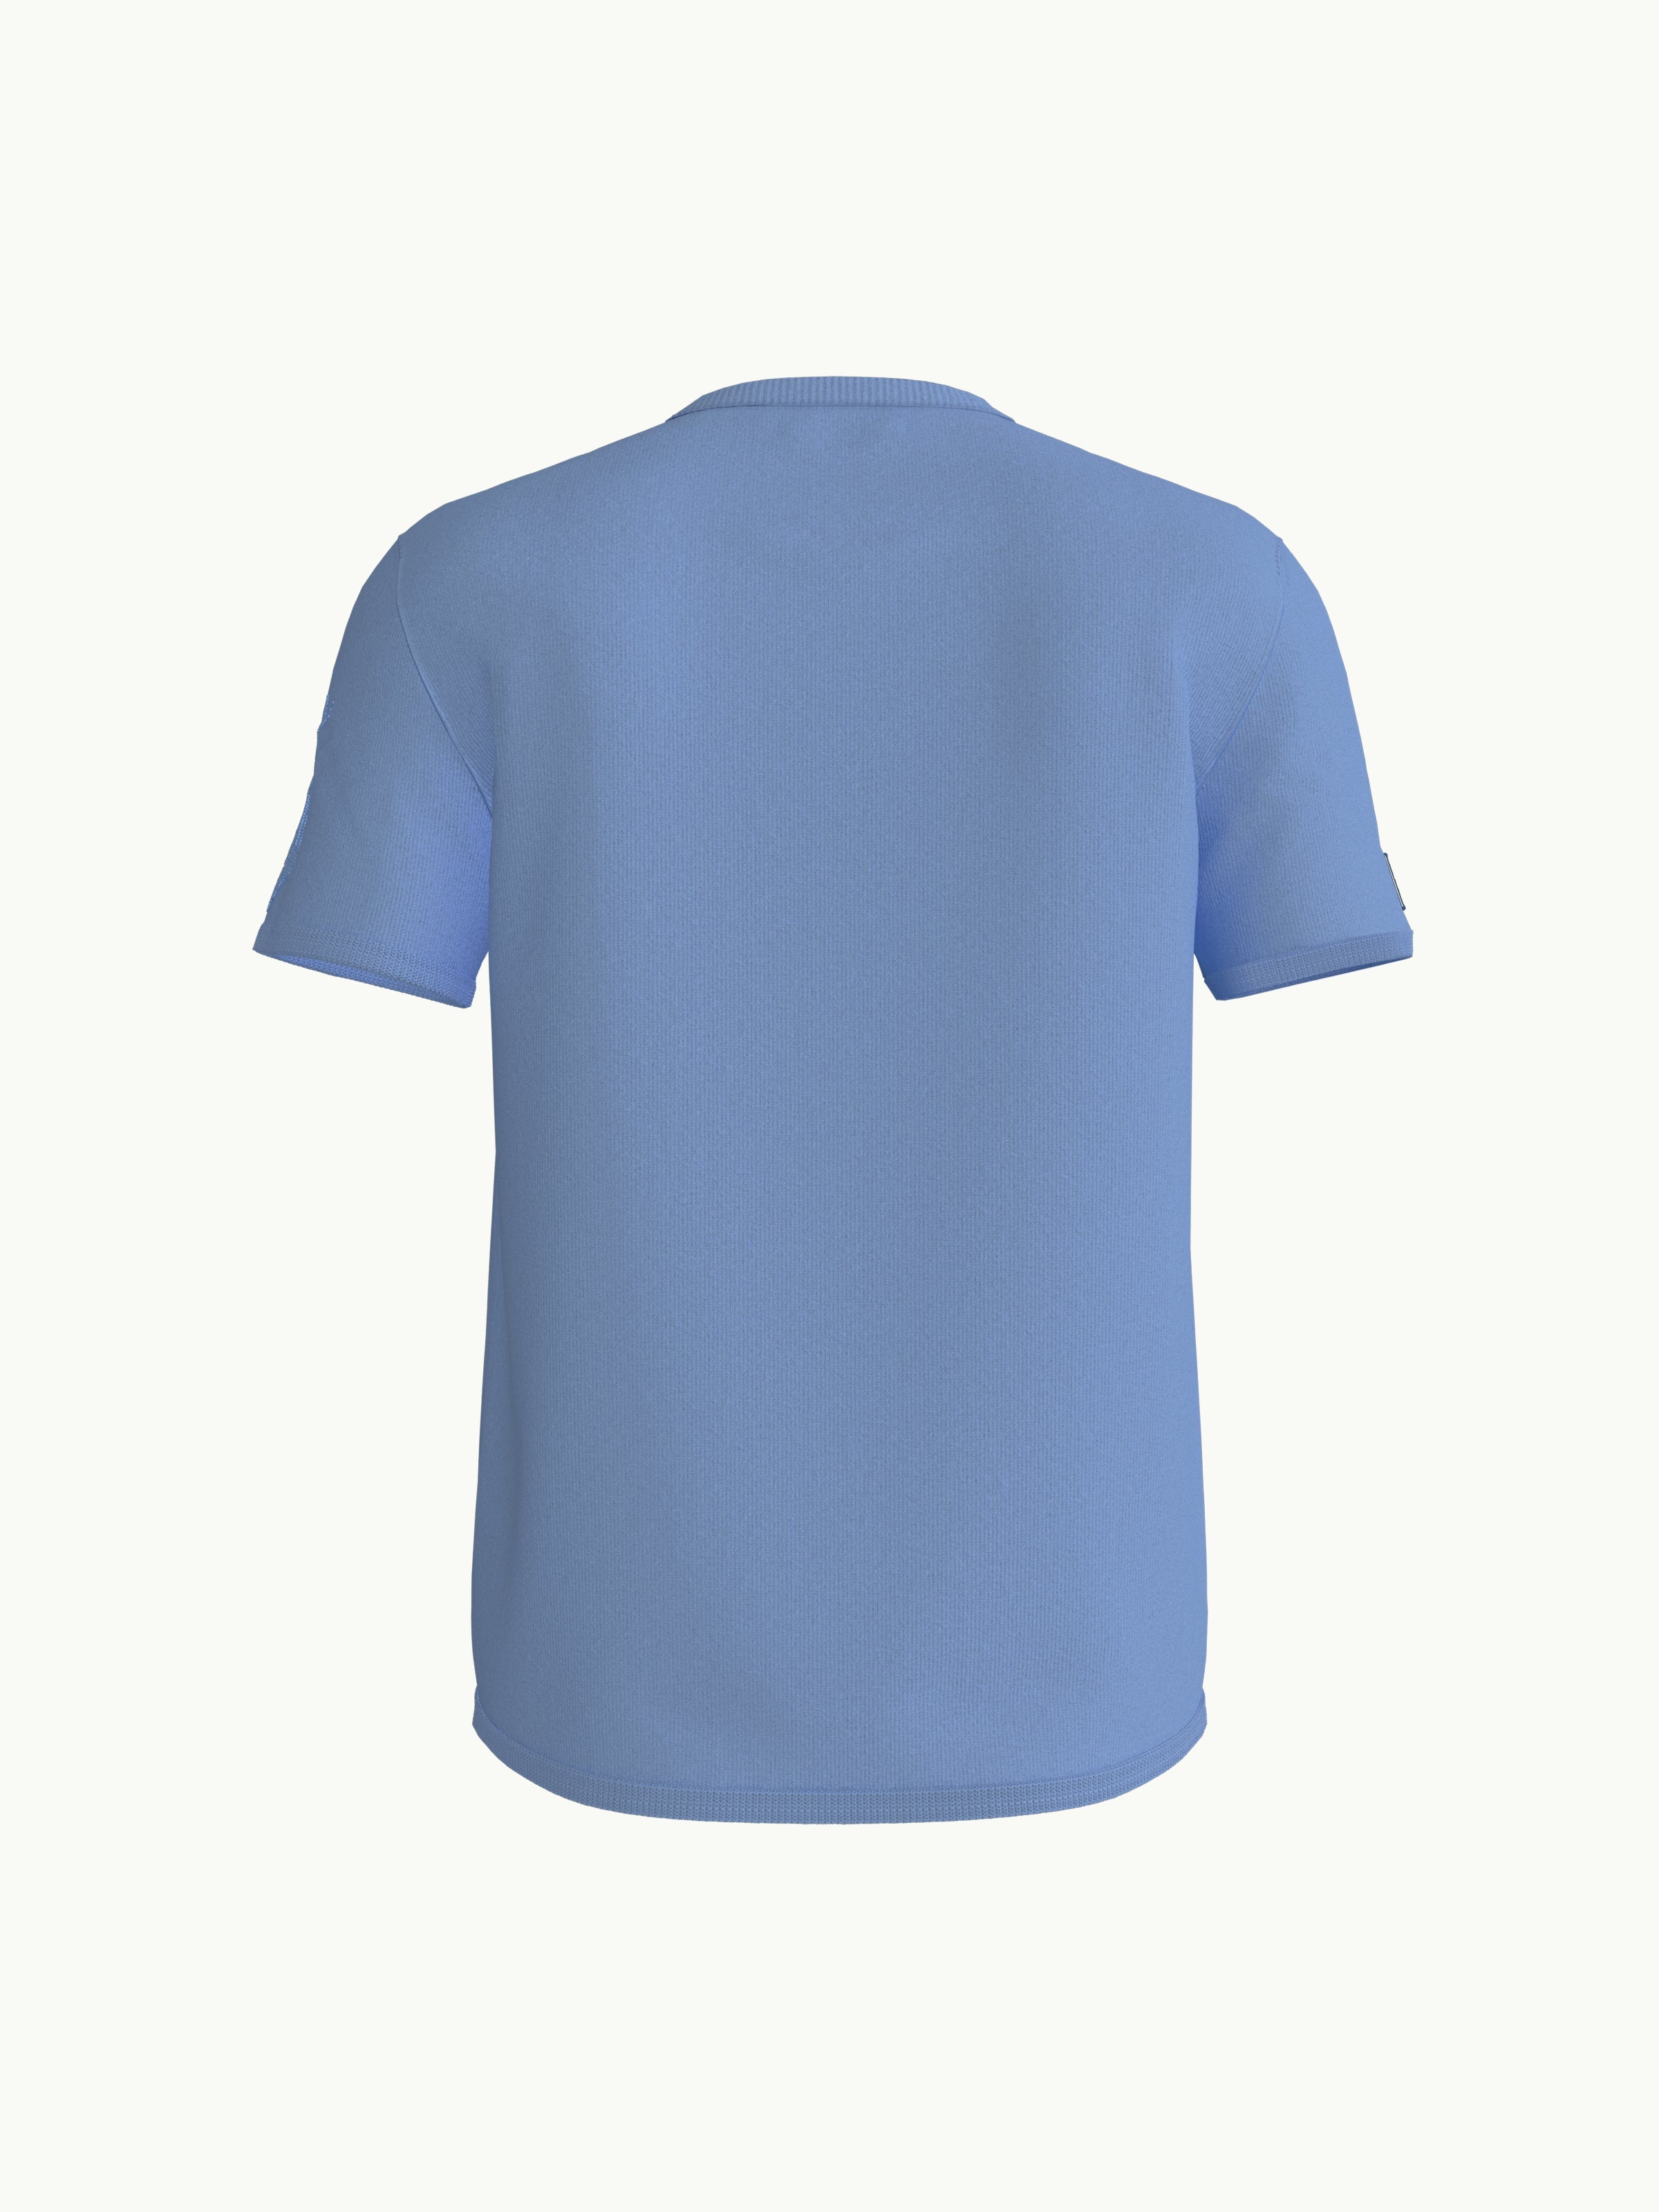 Women's T-Shirt - Rainbowfish Blue